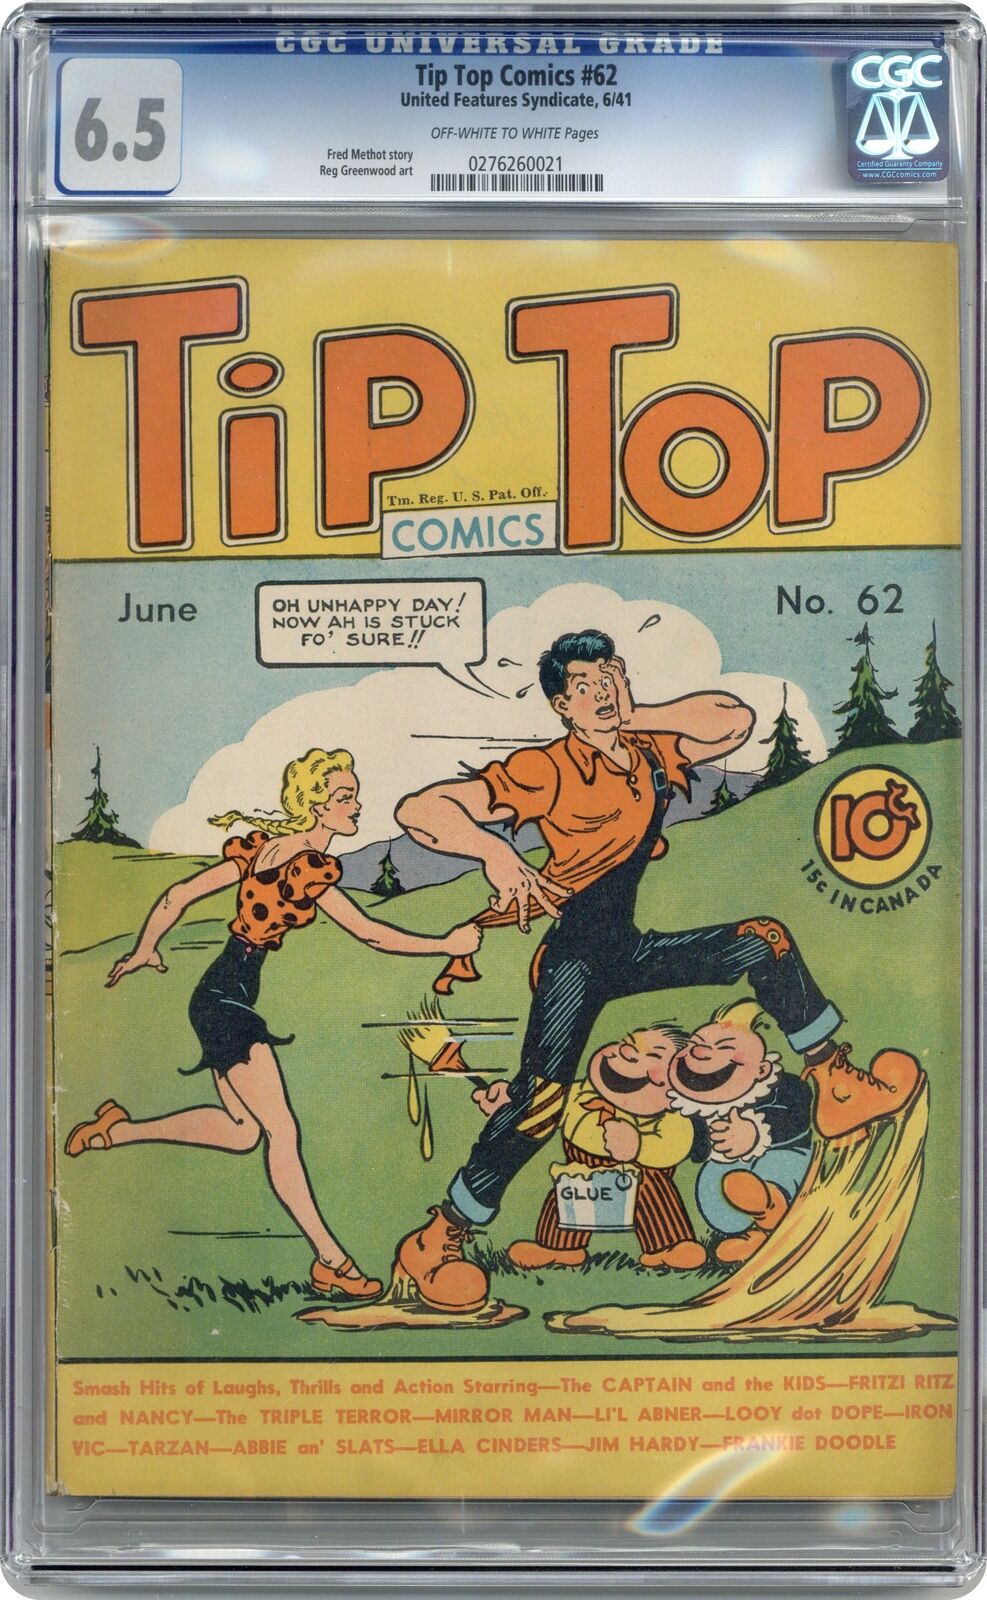 Tip Top Comics #62 CGC 6.5 1941 0276260021